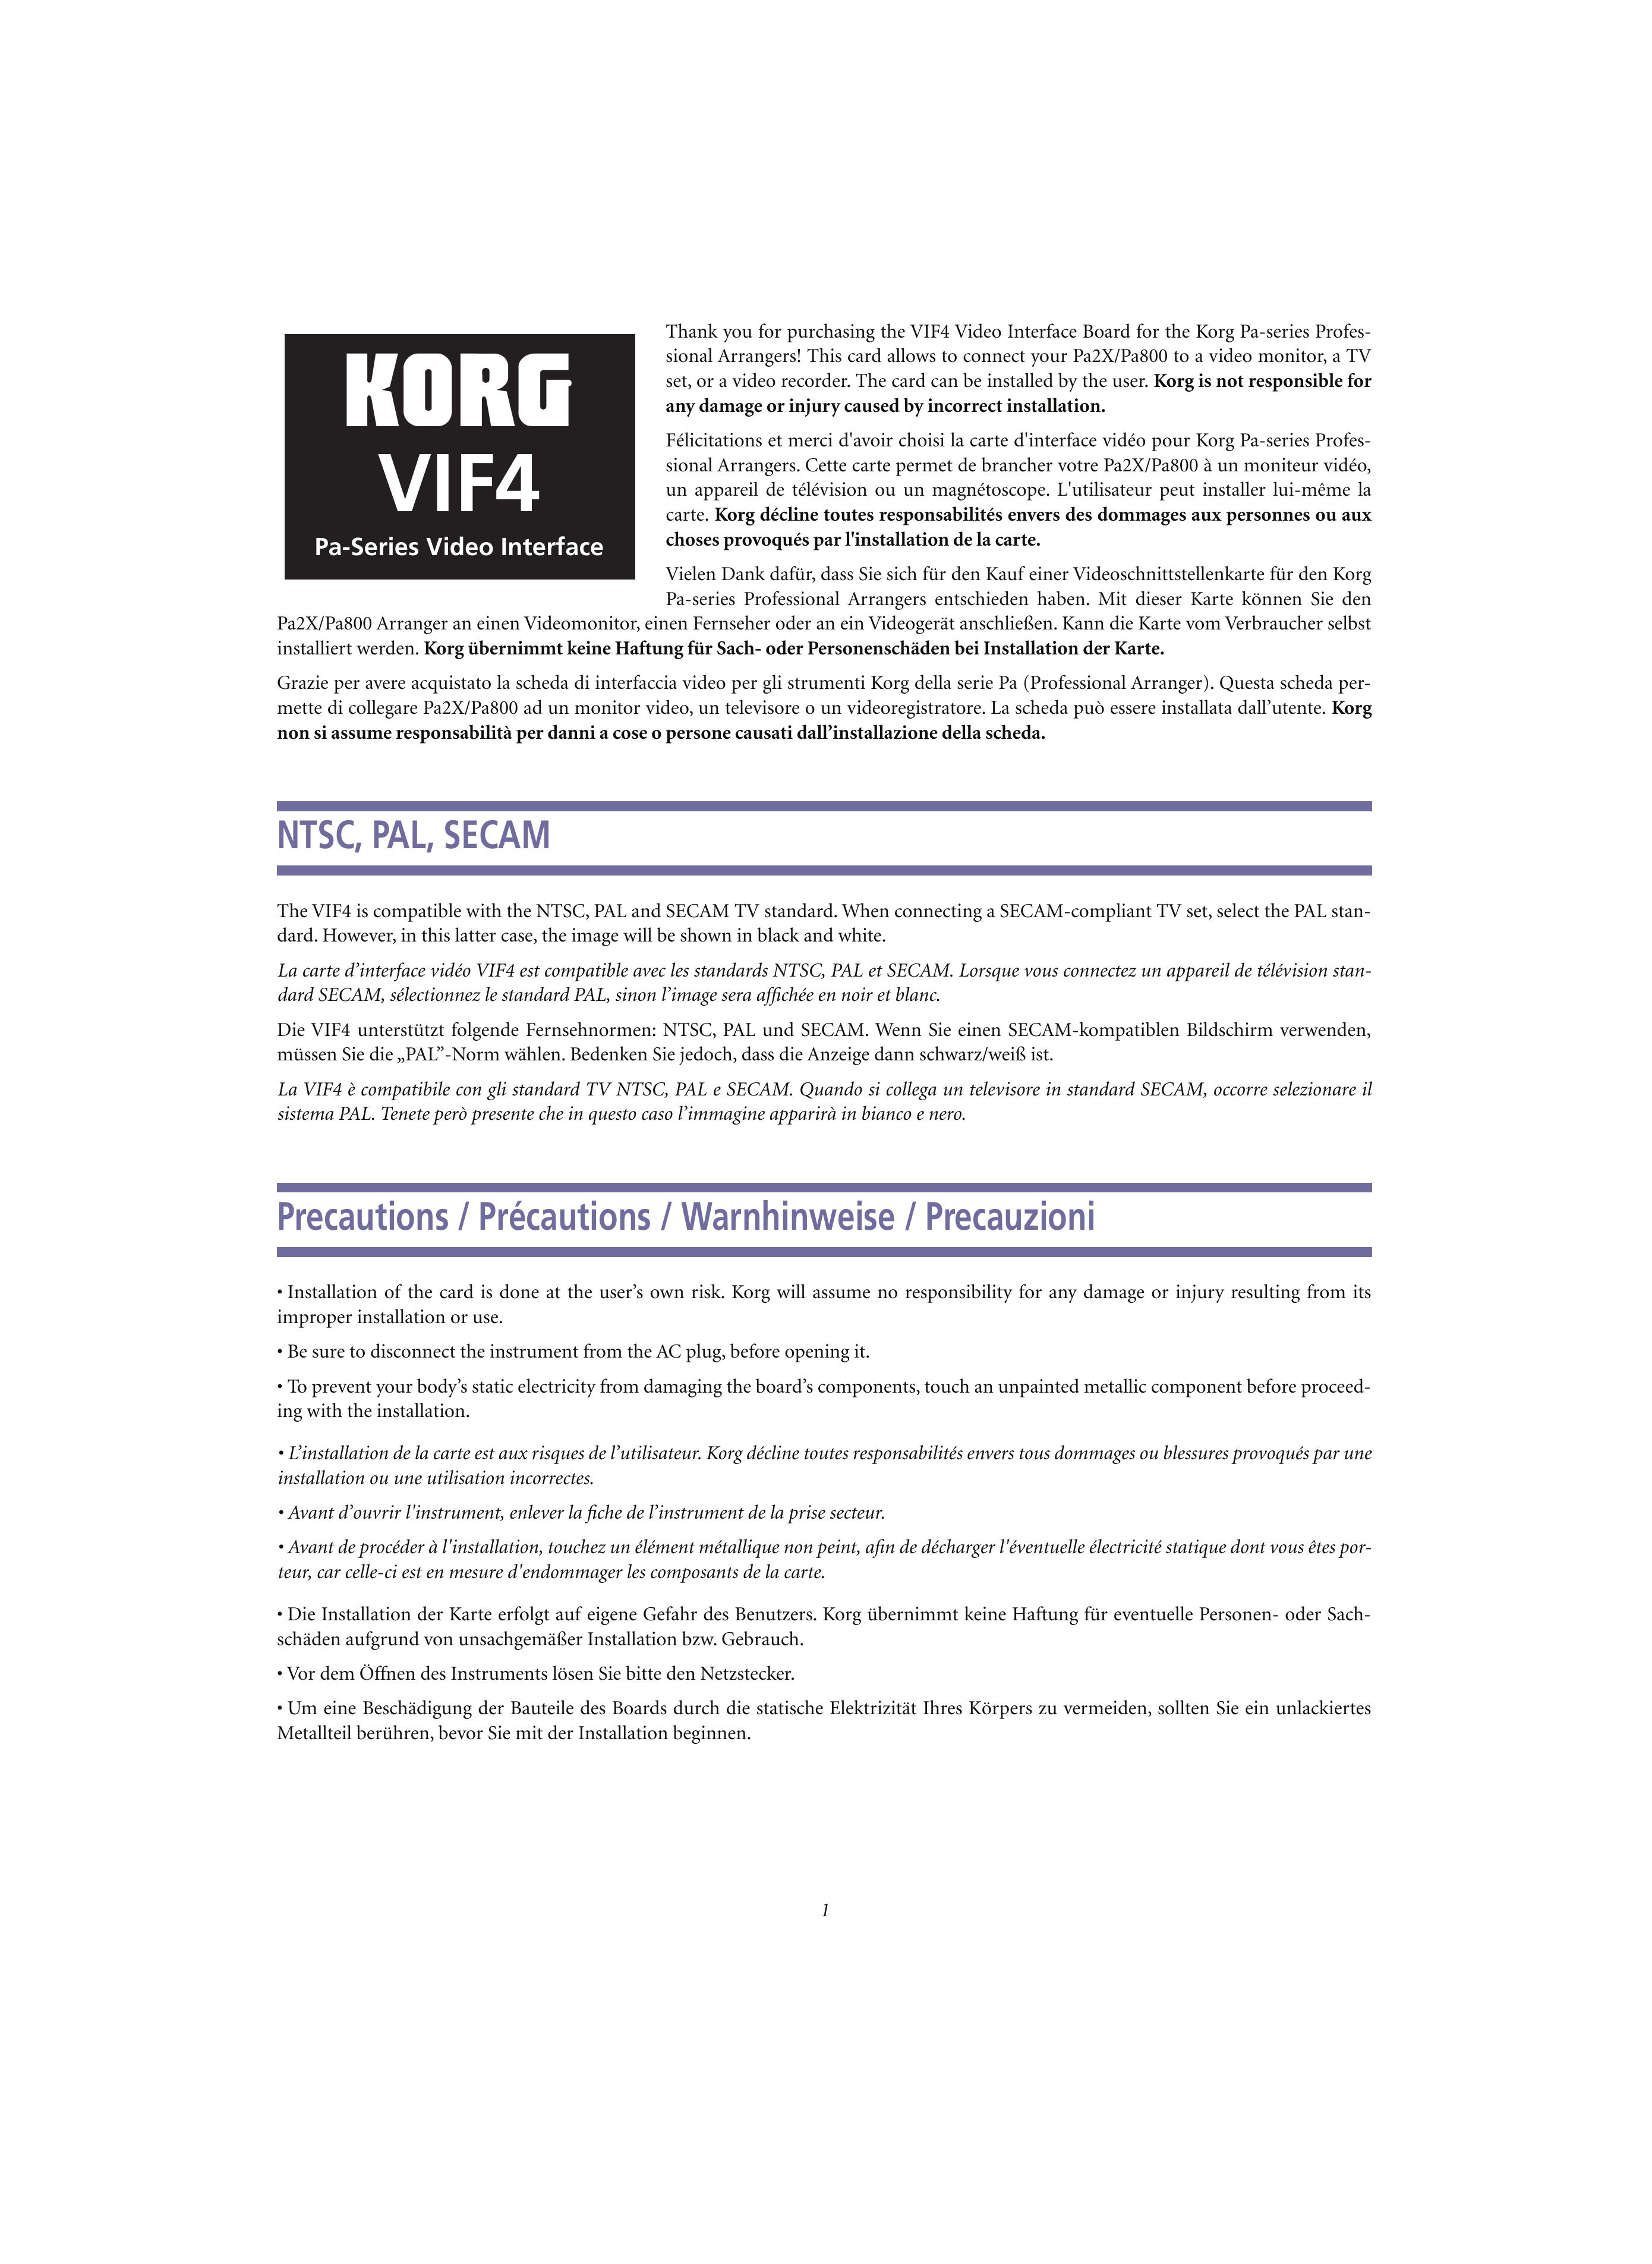 Korg VIF4 Camcorder User Manual